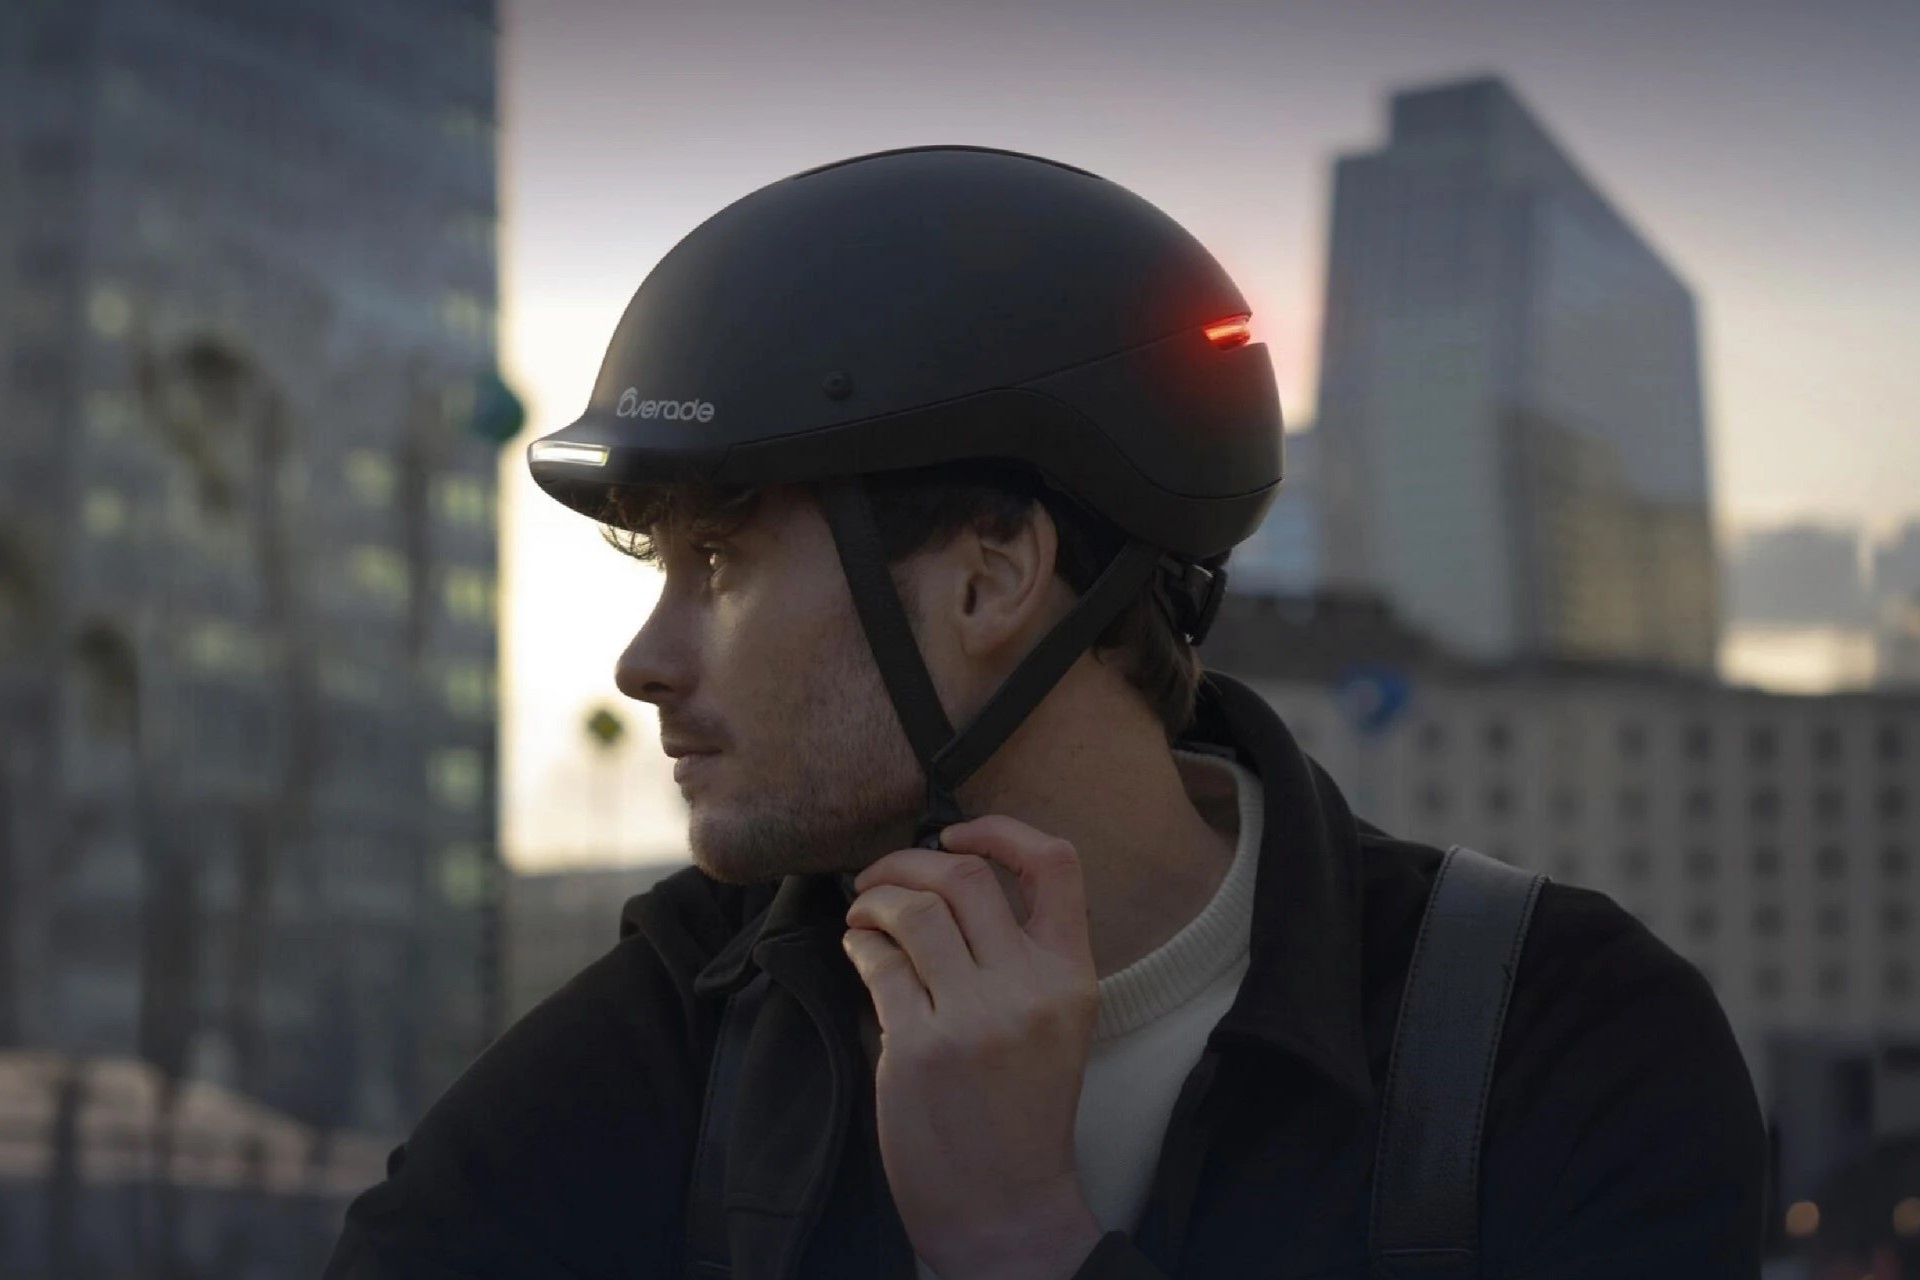 Overade - Achetez le casque vélo urbain idéal. Homologué. Design. Qualité